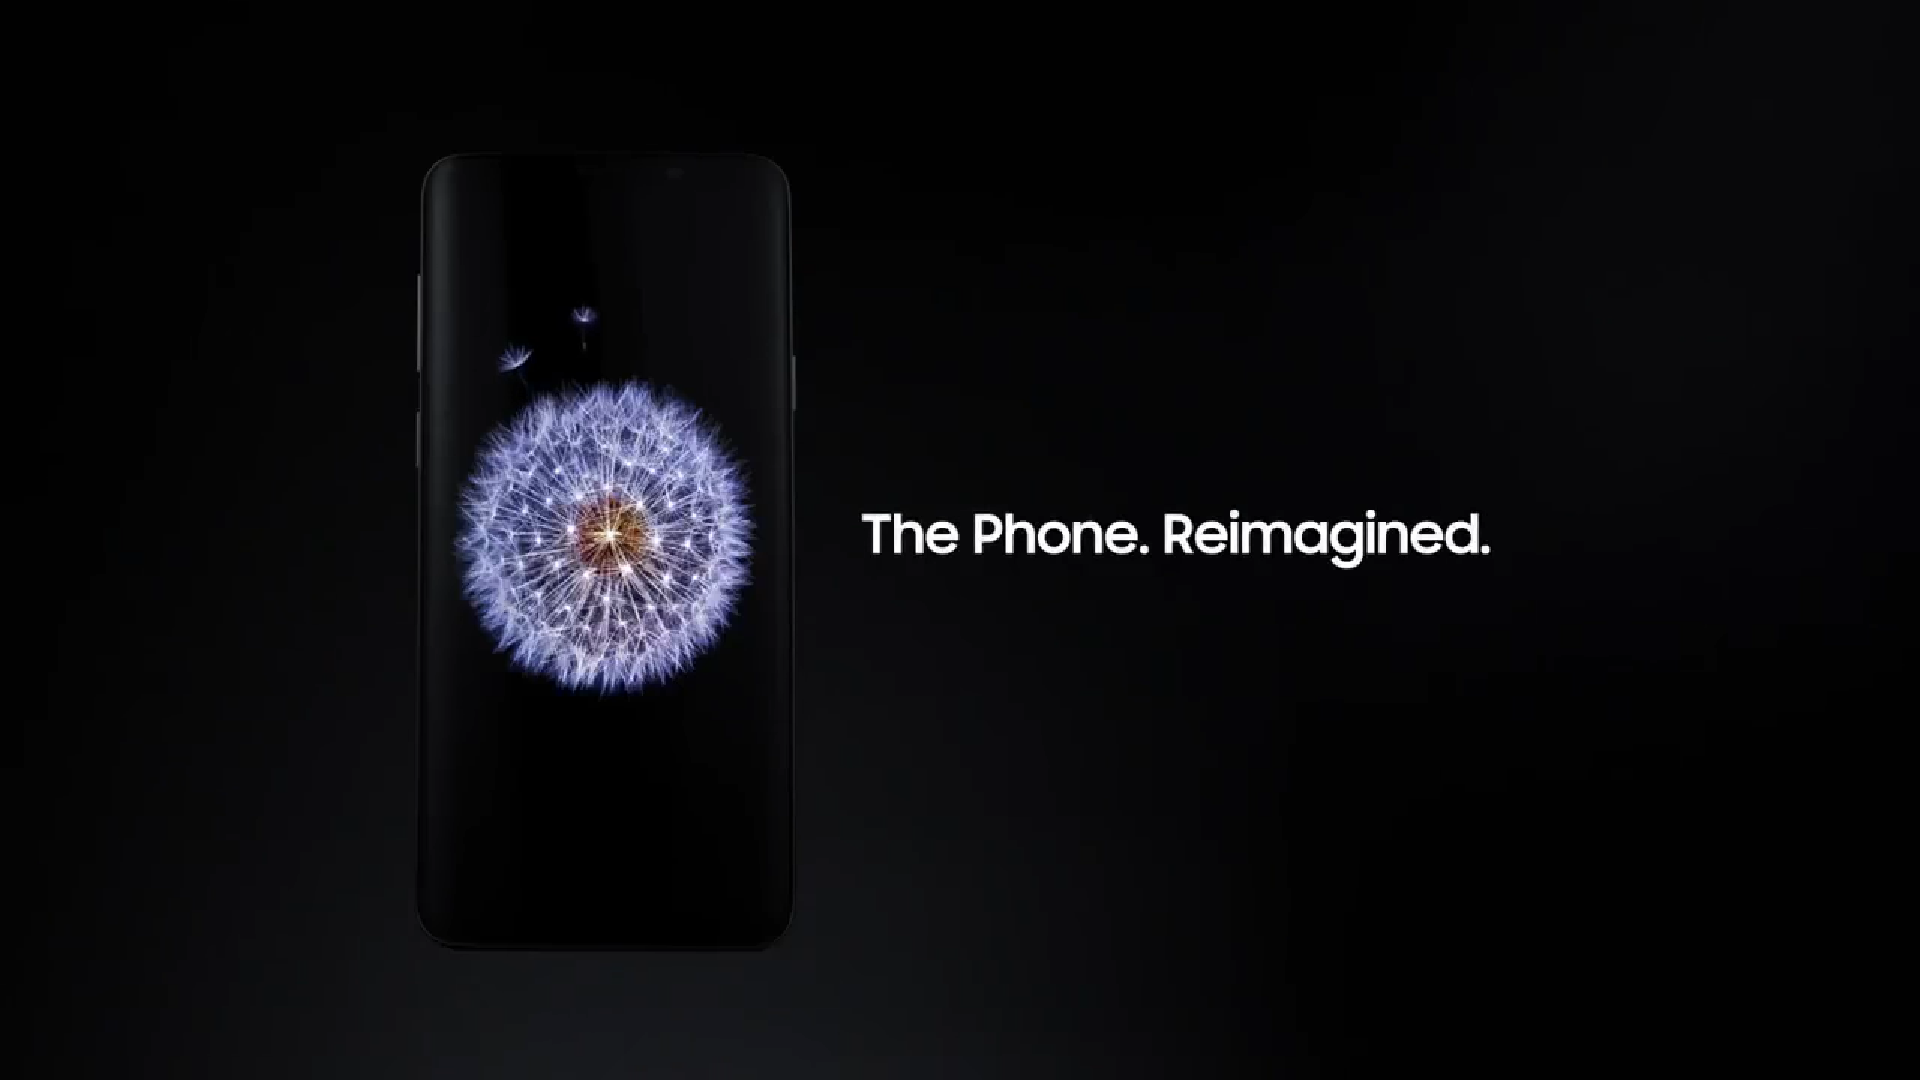 Rò rỉ đoạn phim quảng cáo chính thức về Samsung Galaxy S9